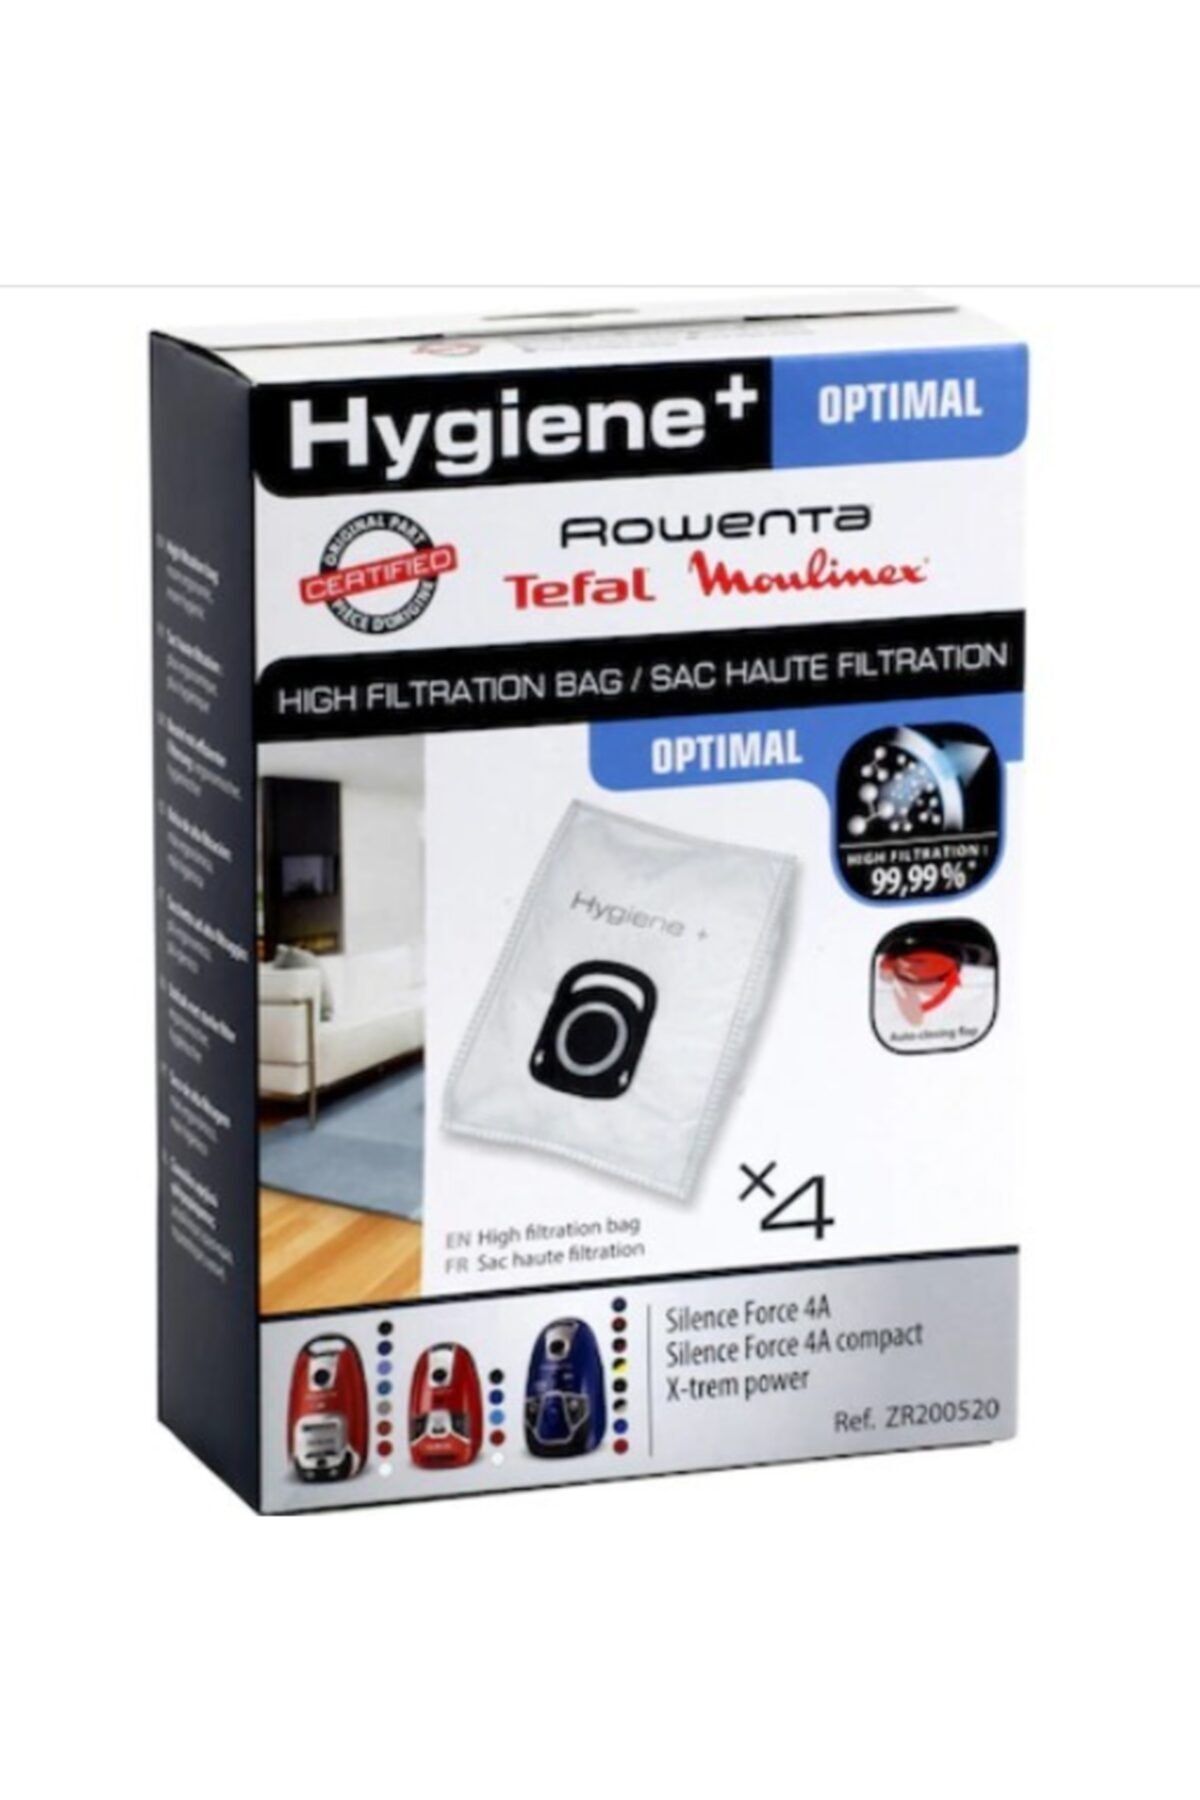 Rowenta Hygiene+ Optimal Toz Torbası Orjinal Ürün